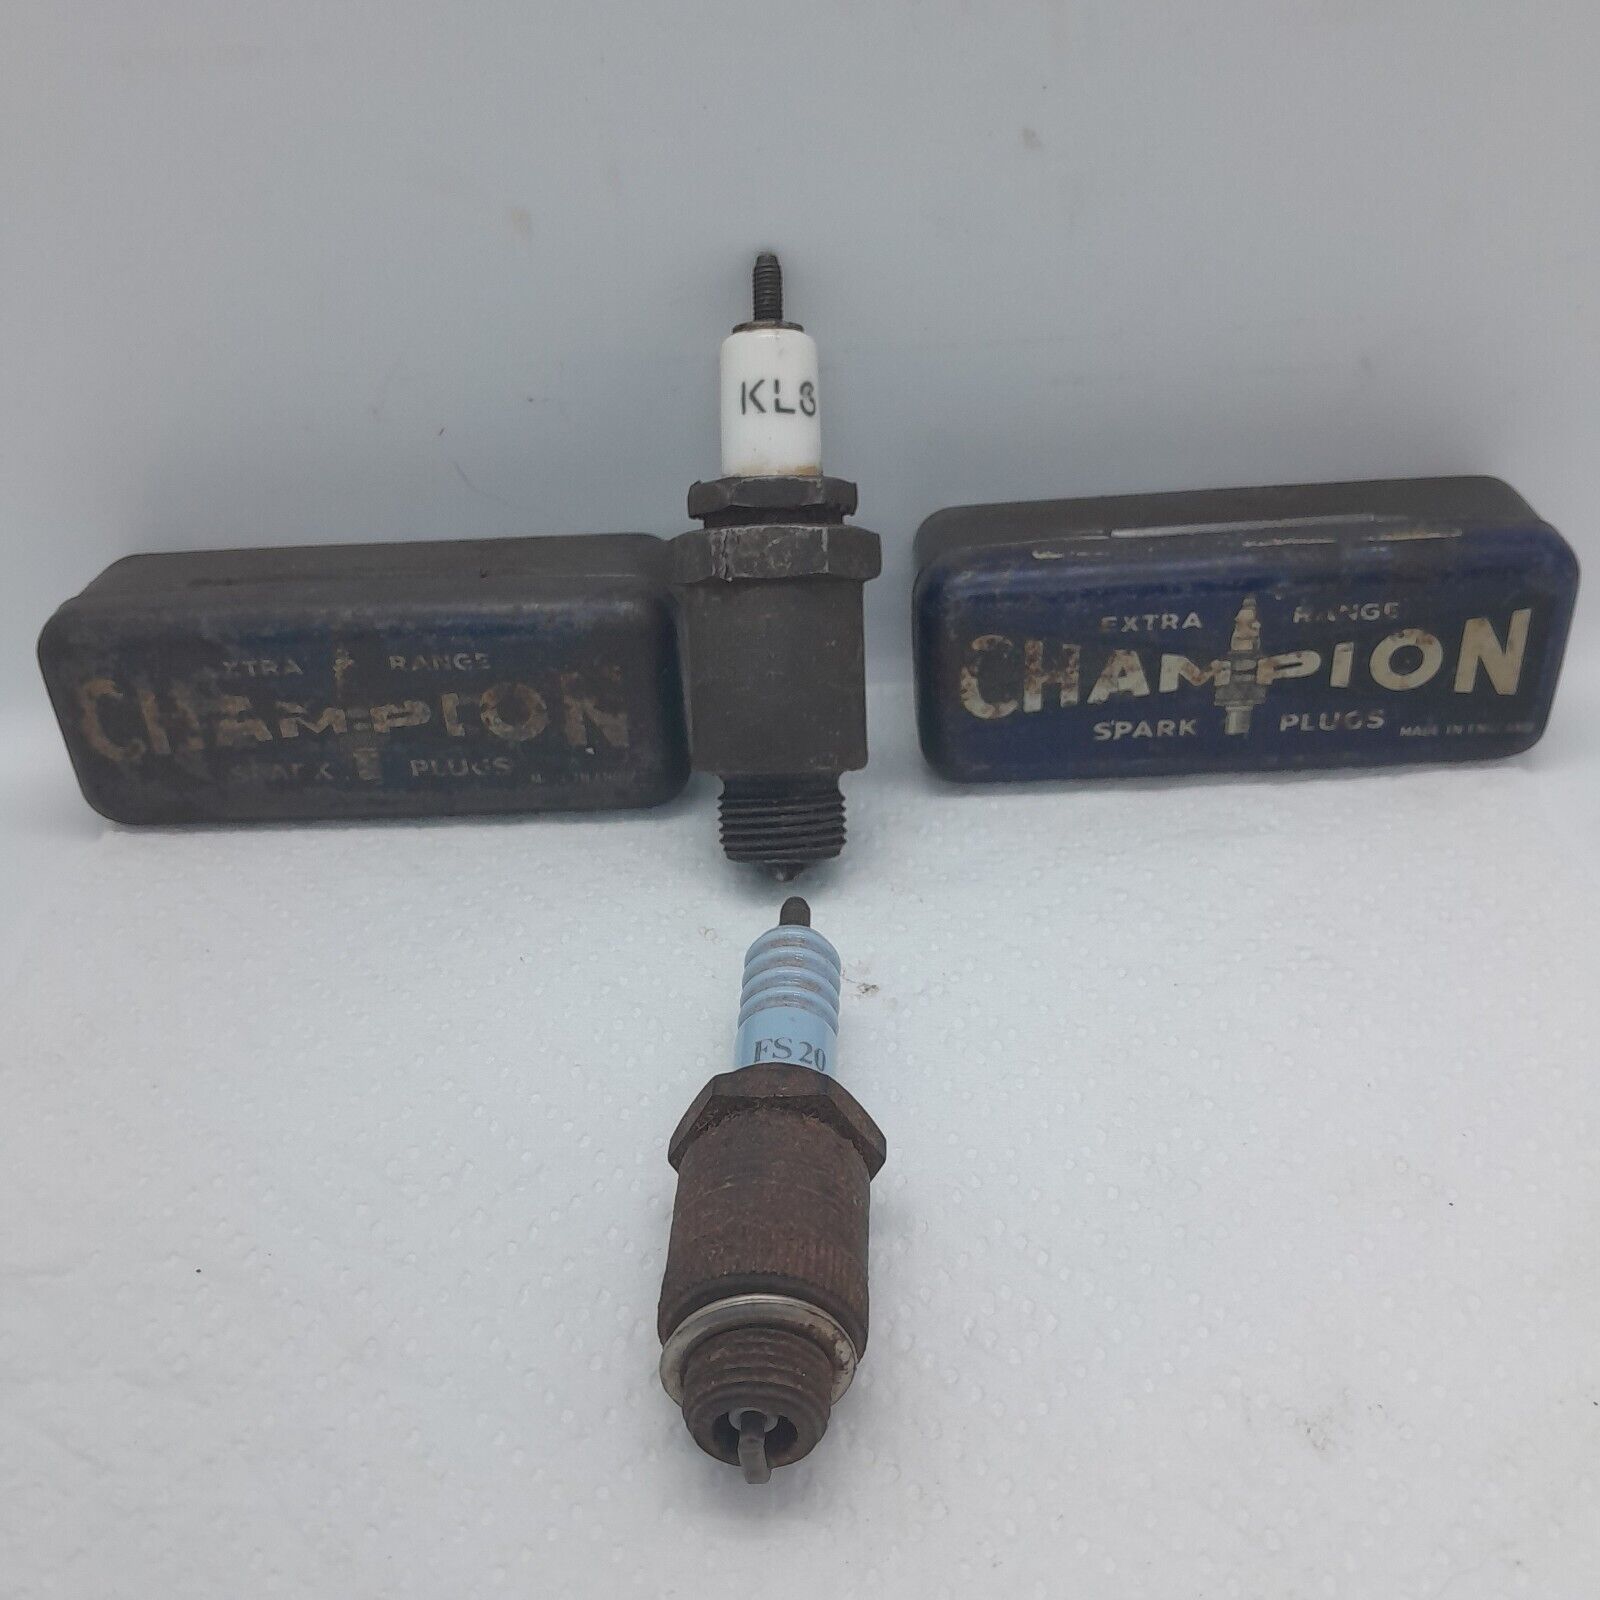 Vintage Champion Spark Plug Tins And Two Vintage Klg Spark Plugs.